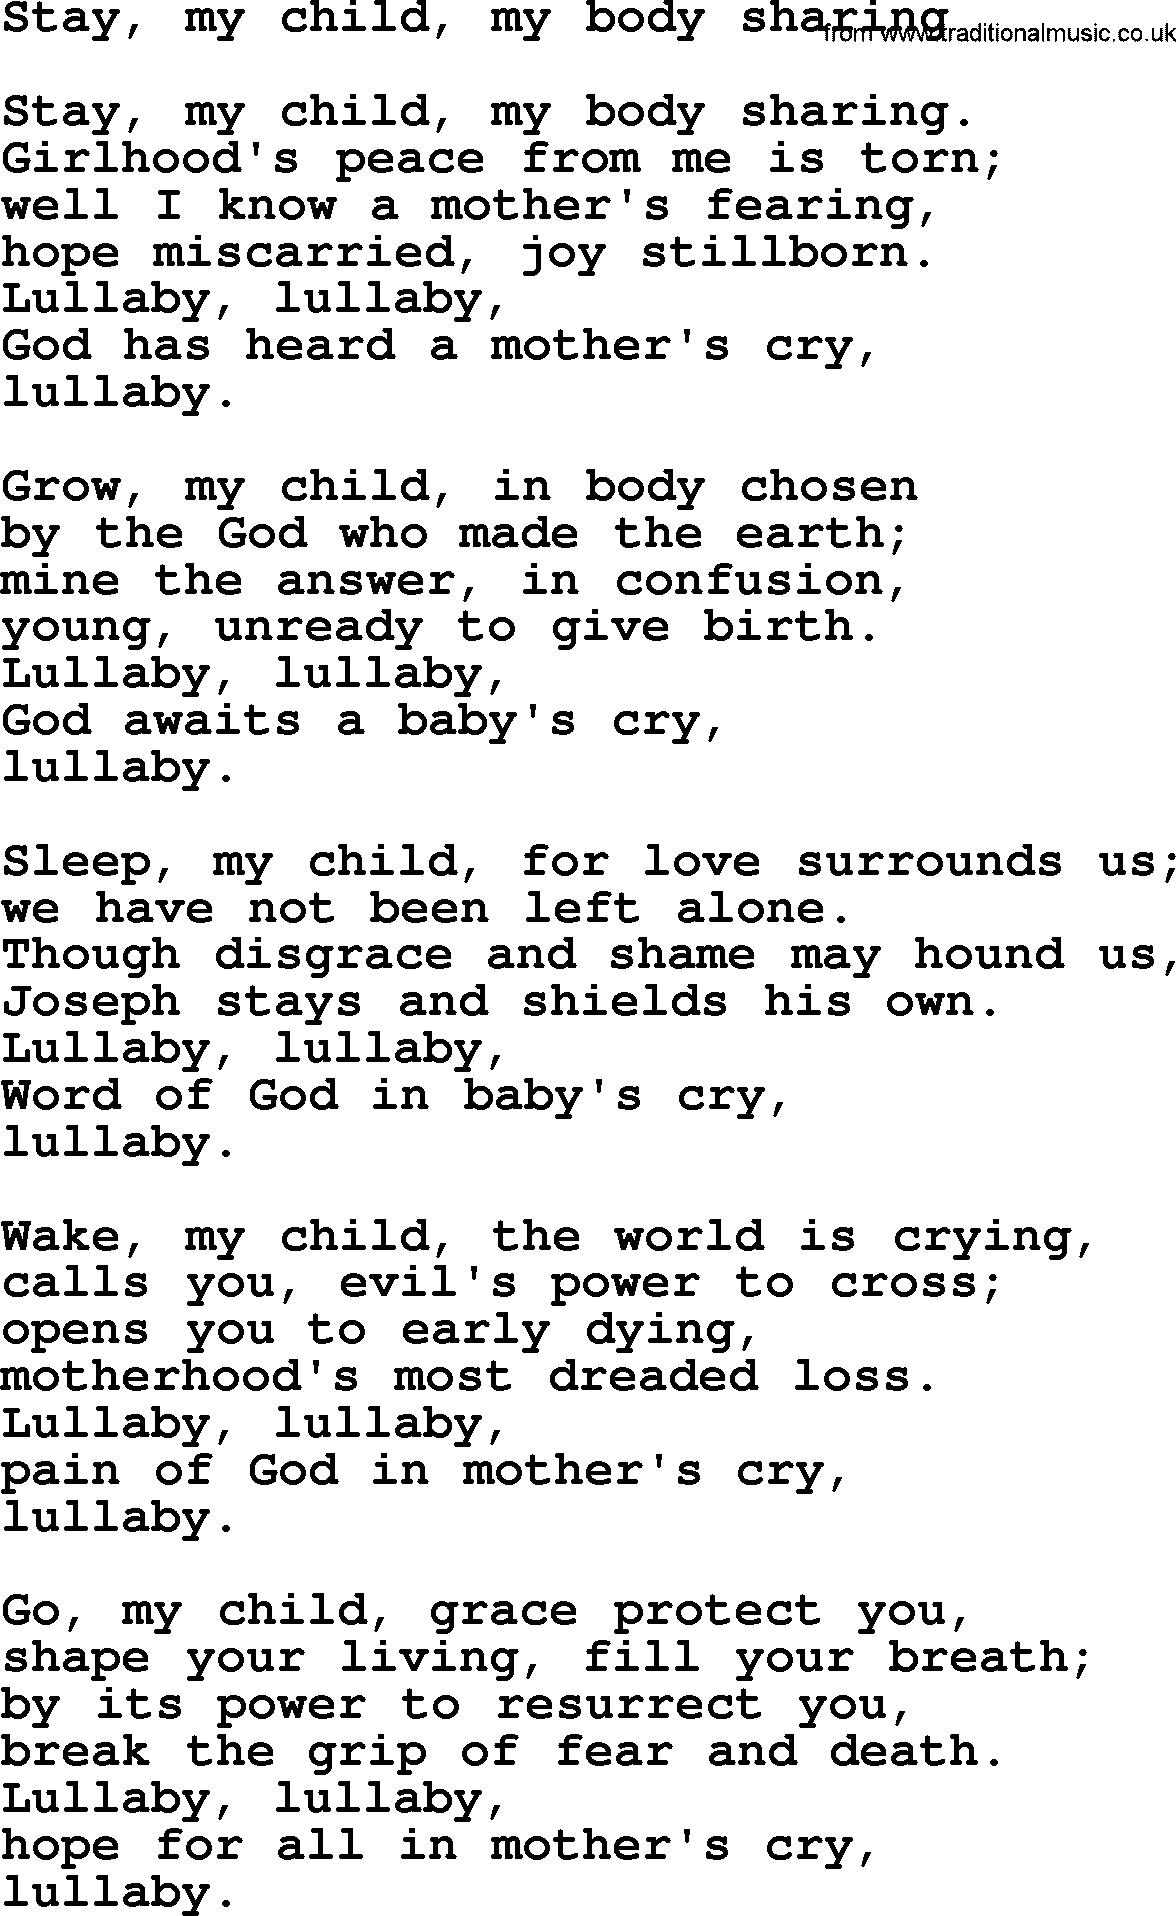 Epiphany Hymns, Hymn: Stay, My Child, My Body Sharing, lyrics with PDF